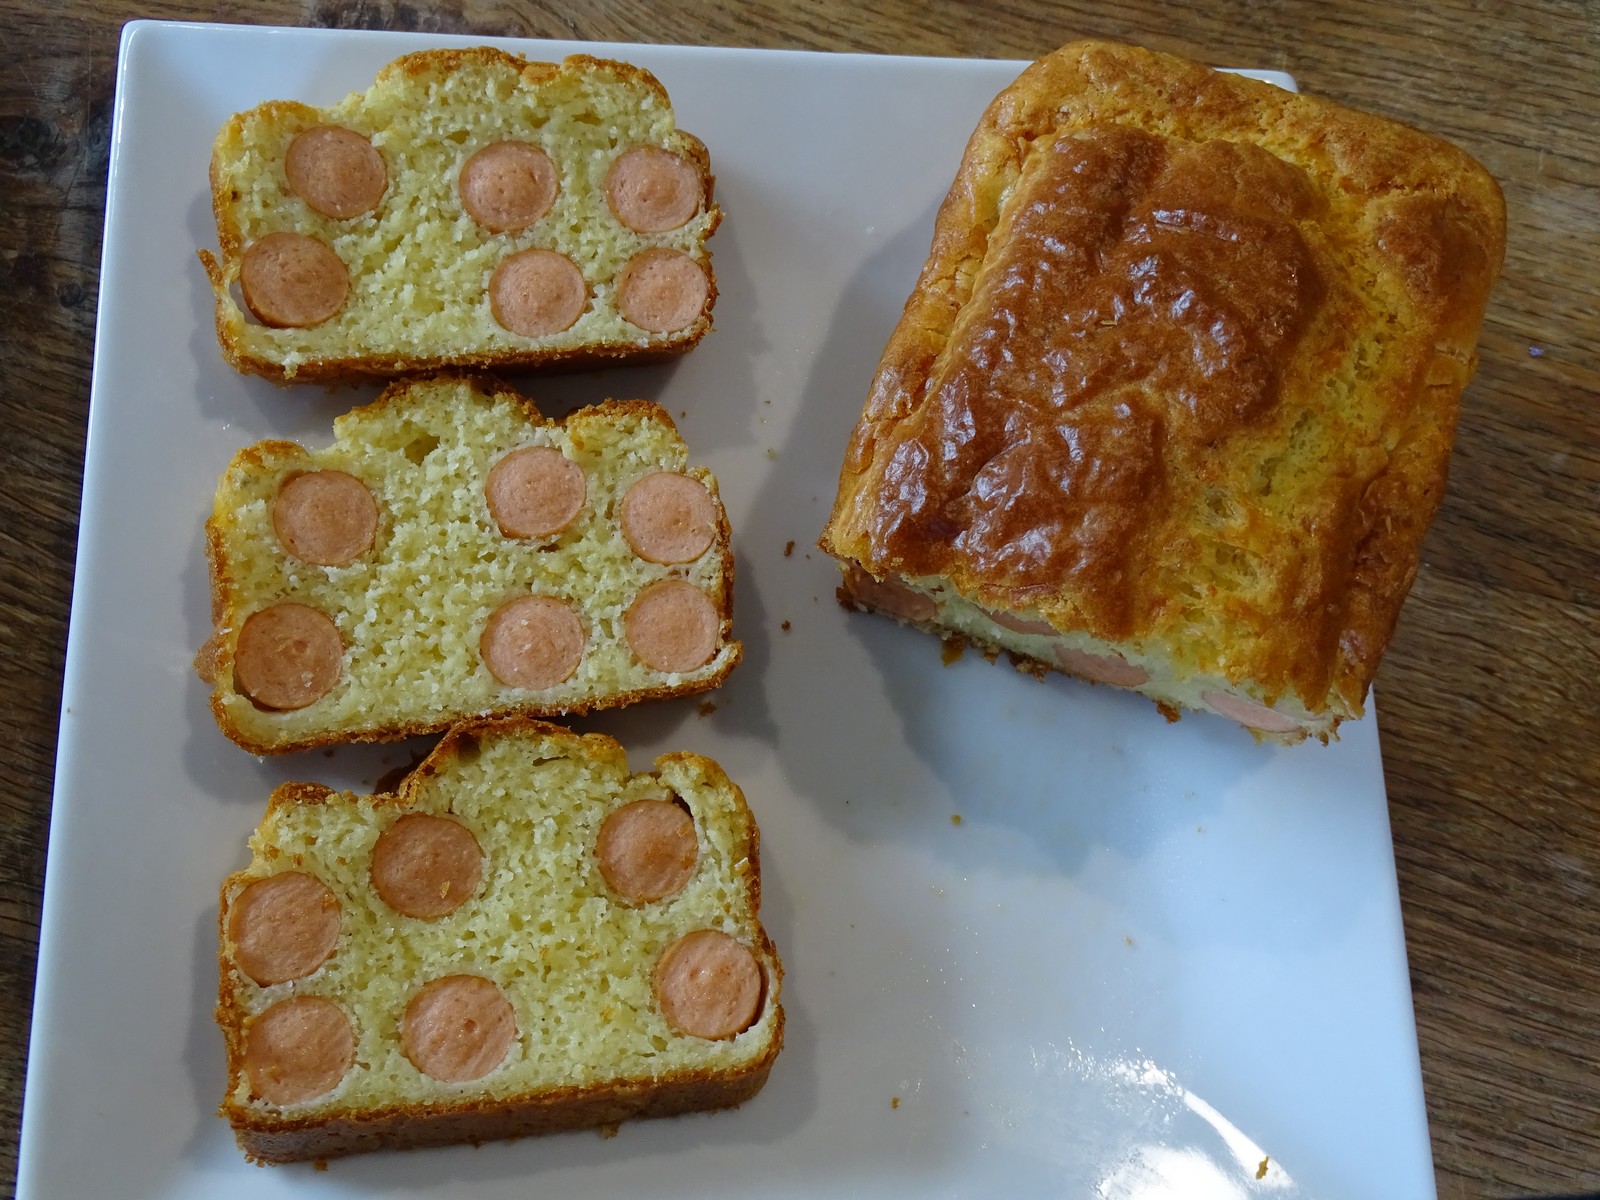 Cake hot dog image